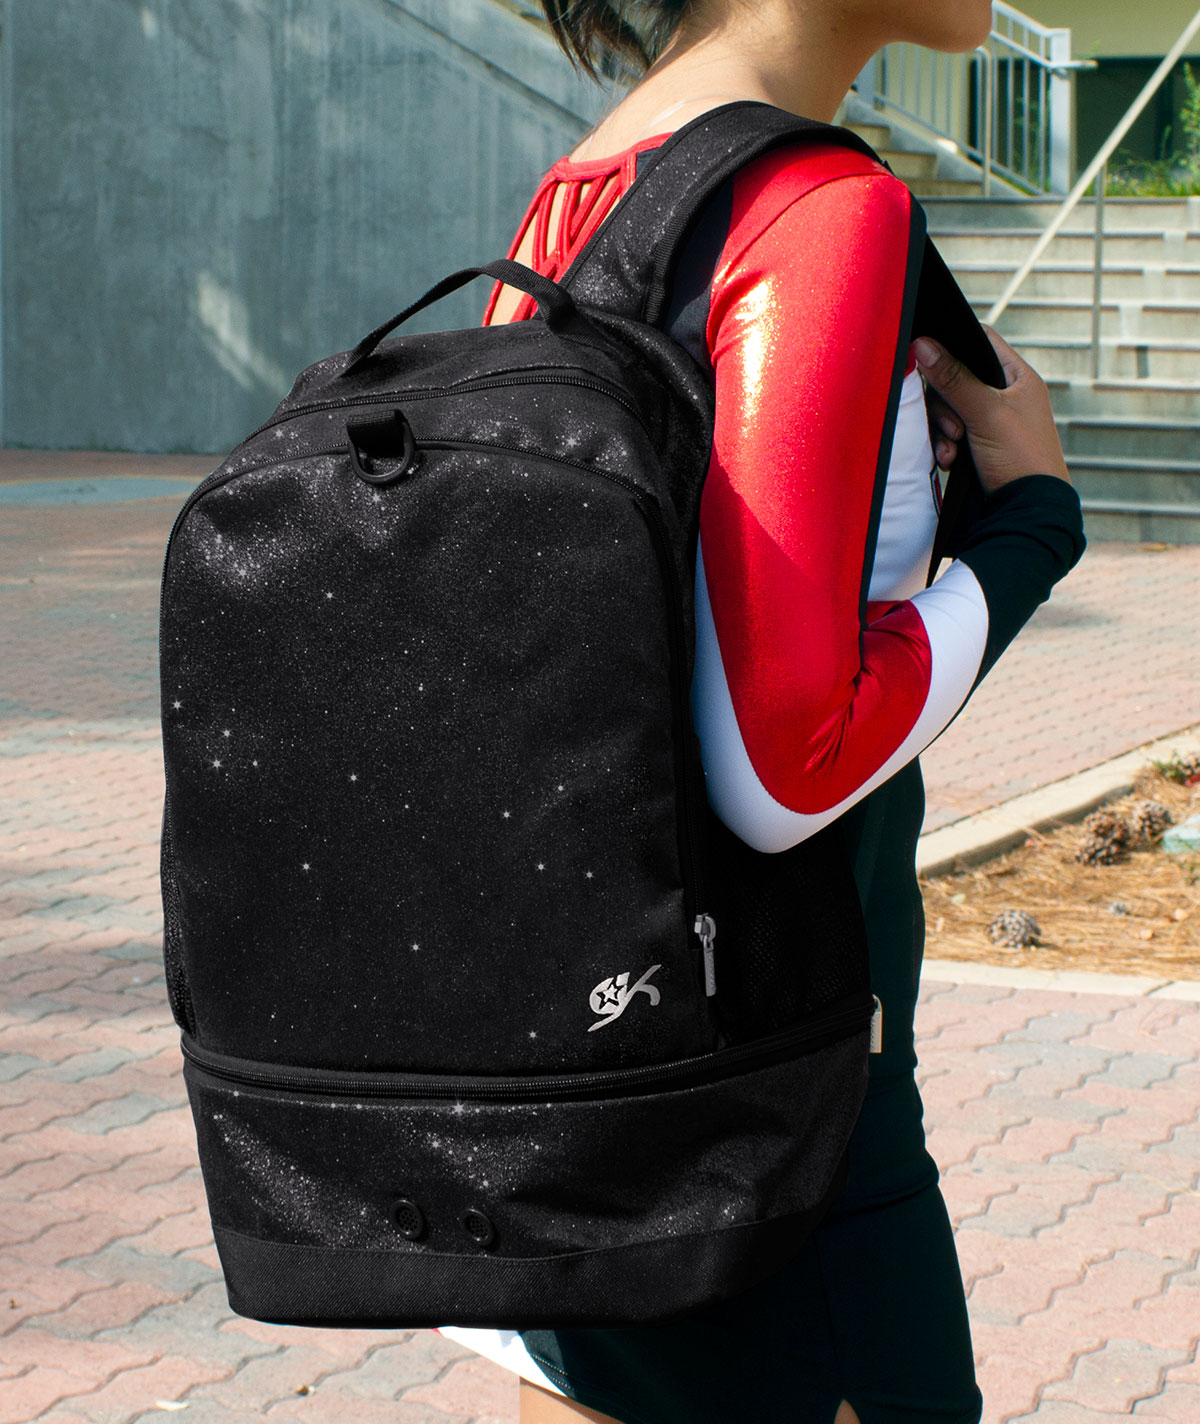 Fee iron wise GK All Star Elite Glitter Backpack - Cheer Bags | Omni Cheer